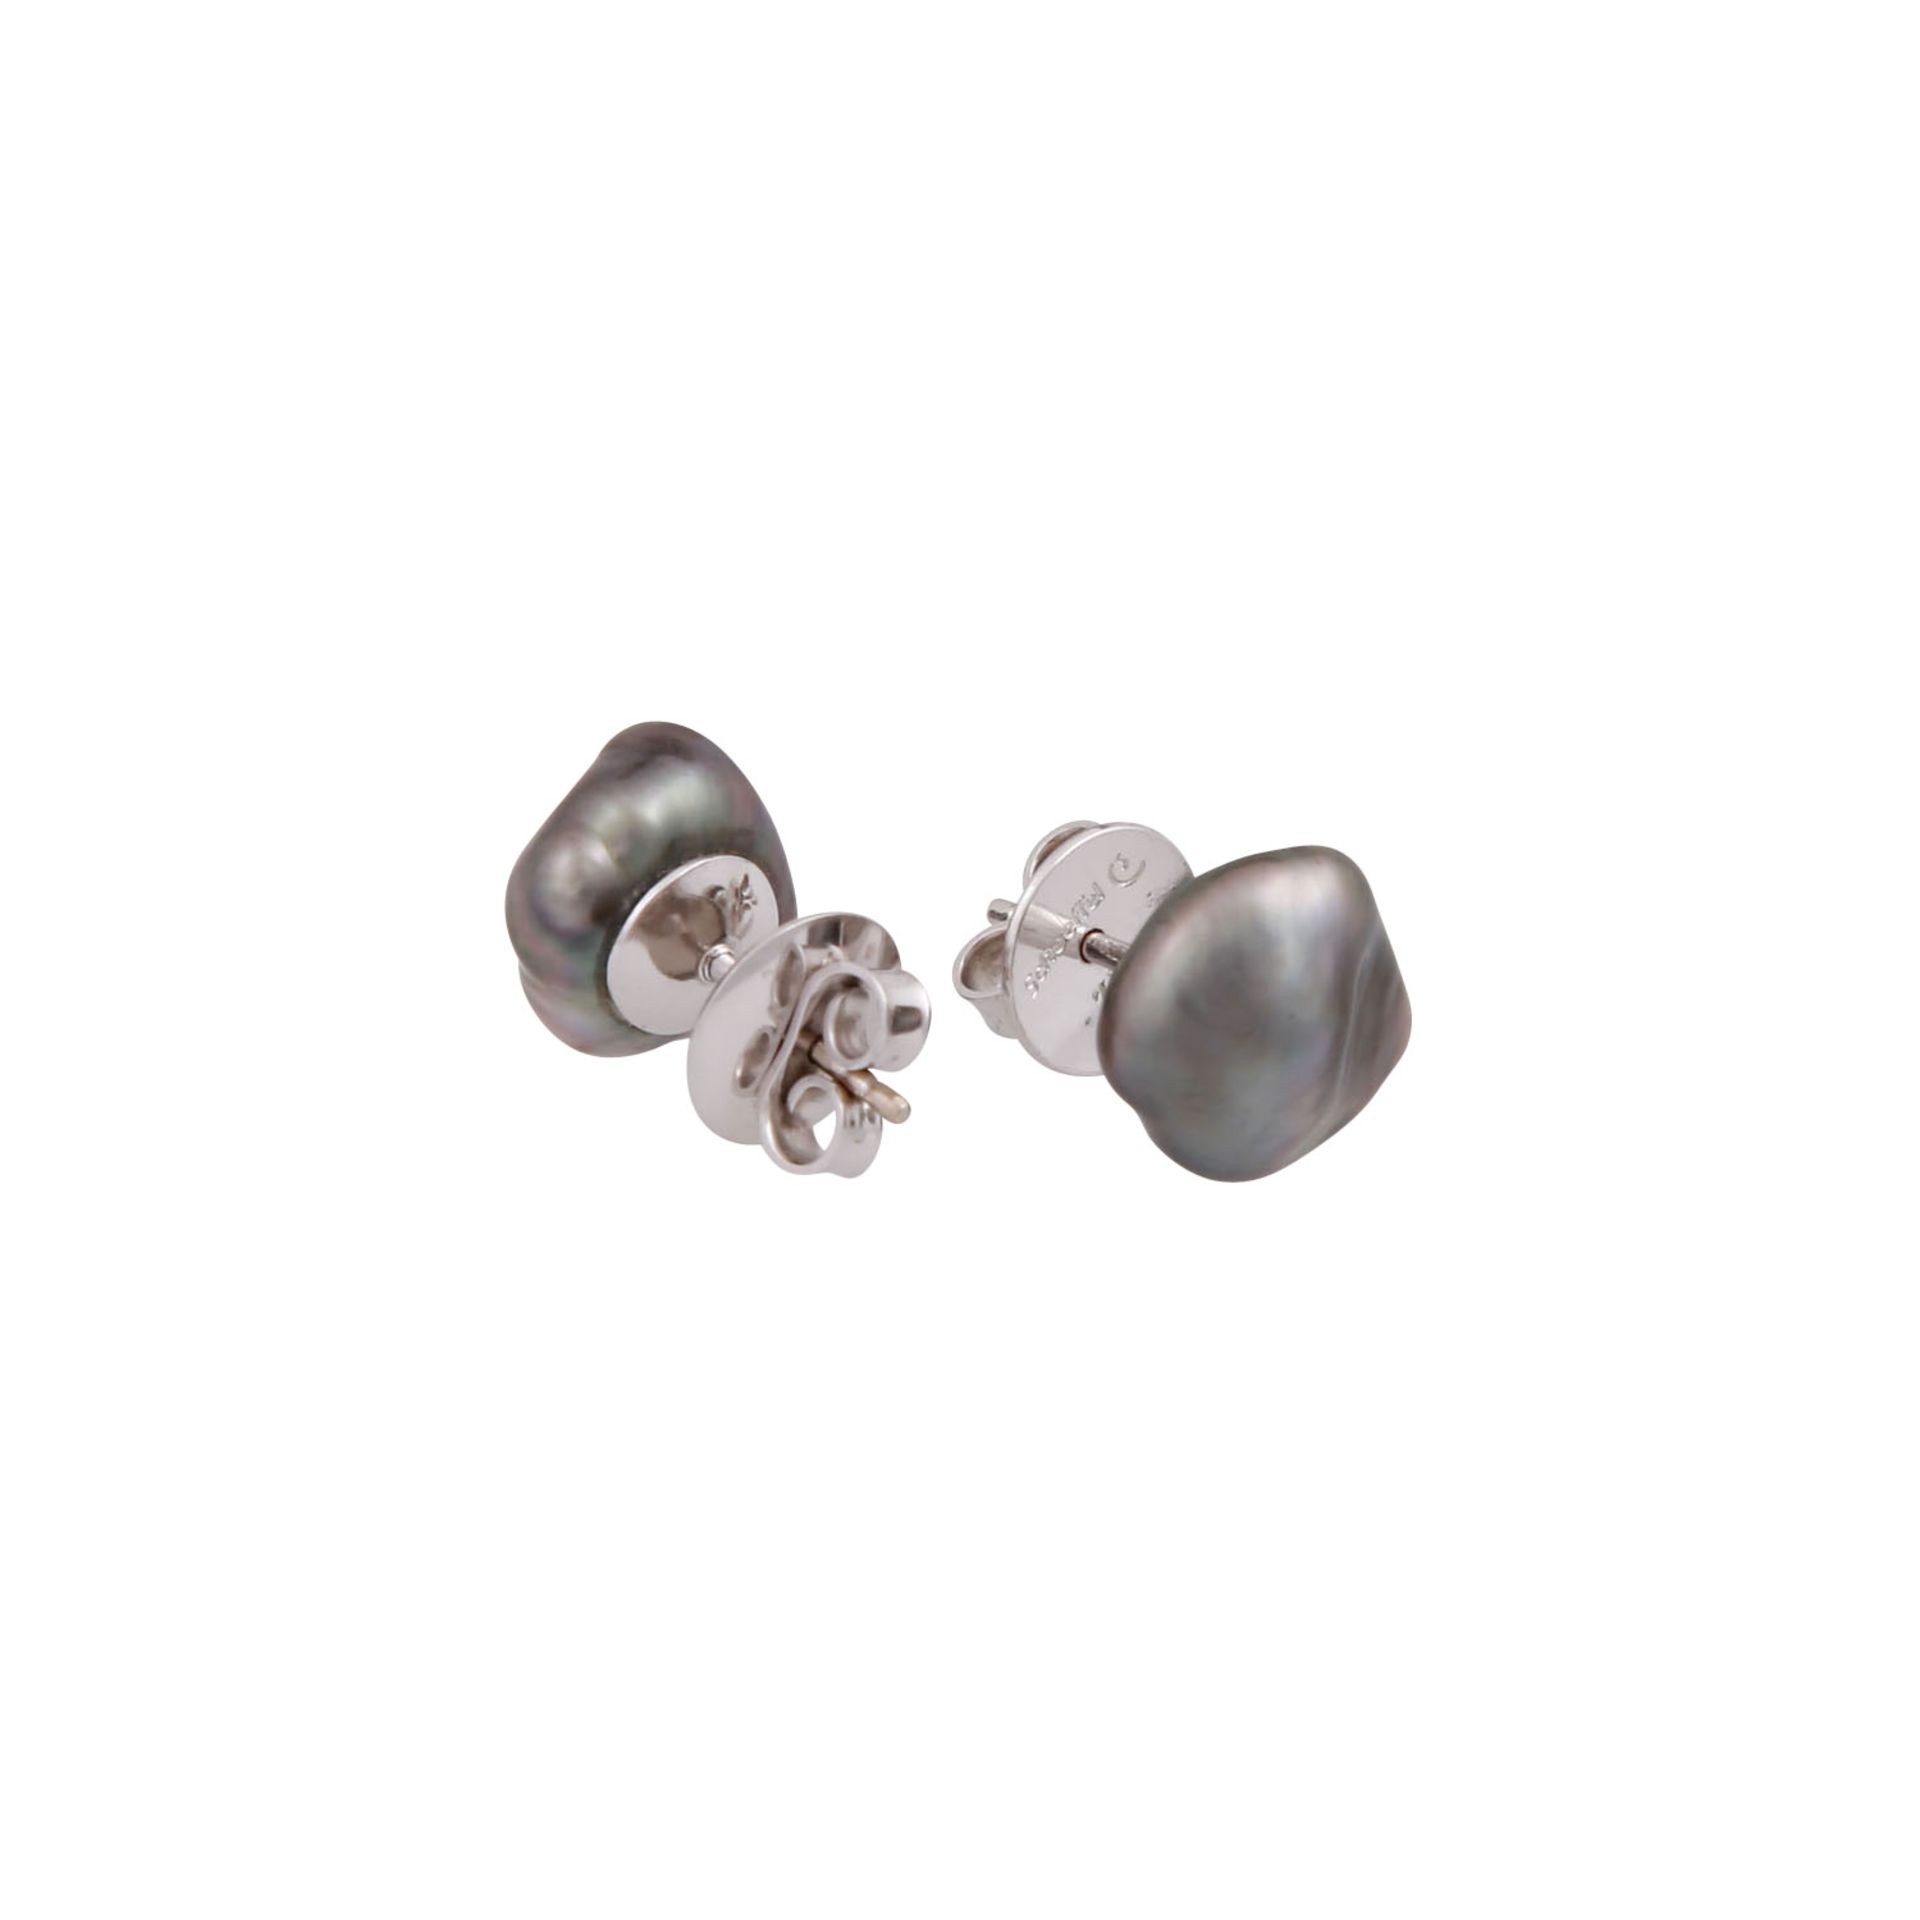 Konvolut aus Tahiti-Perlenkette und Ohrsteckern,GG/WG 18K, Kette aus Zuchtperlen, ca. 11 mm, - Image 3 of 3